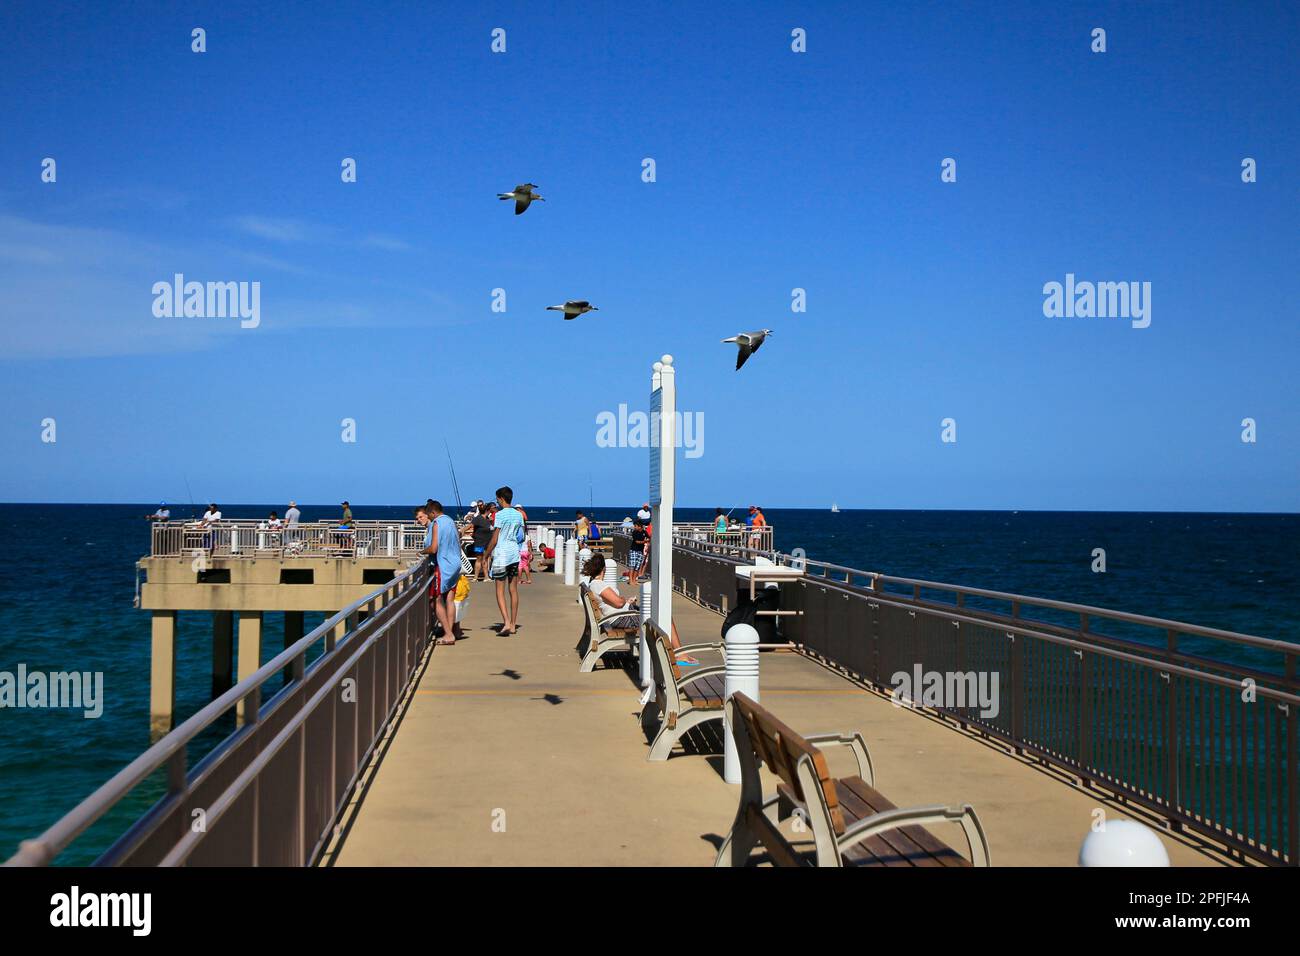 Sunny Isles, Miami, FL. Tourist are seen at dock of Sunny Isles. Photo by: José Bula. Stock Photo